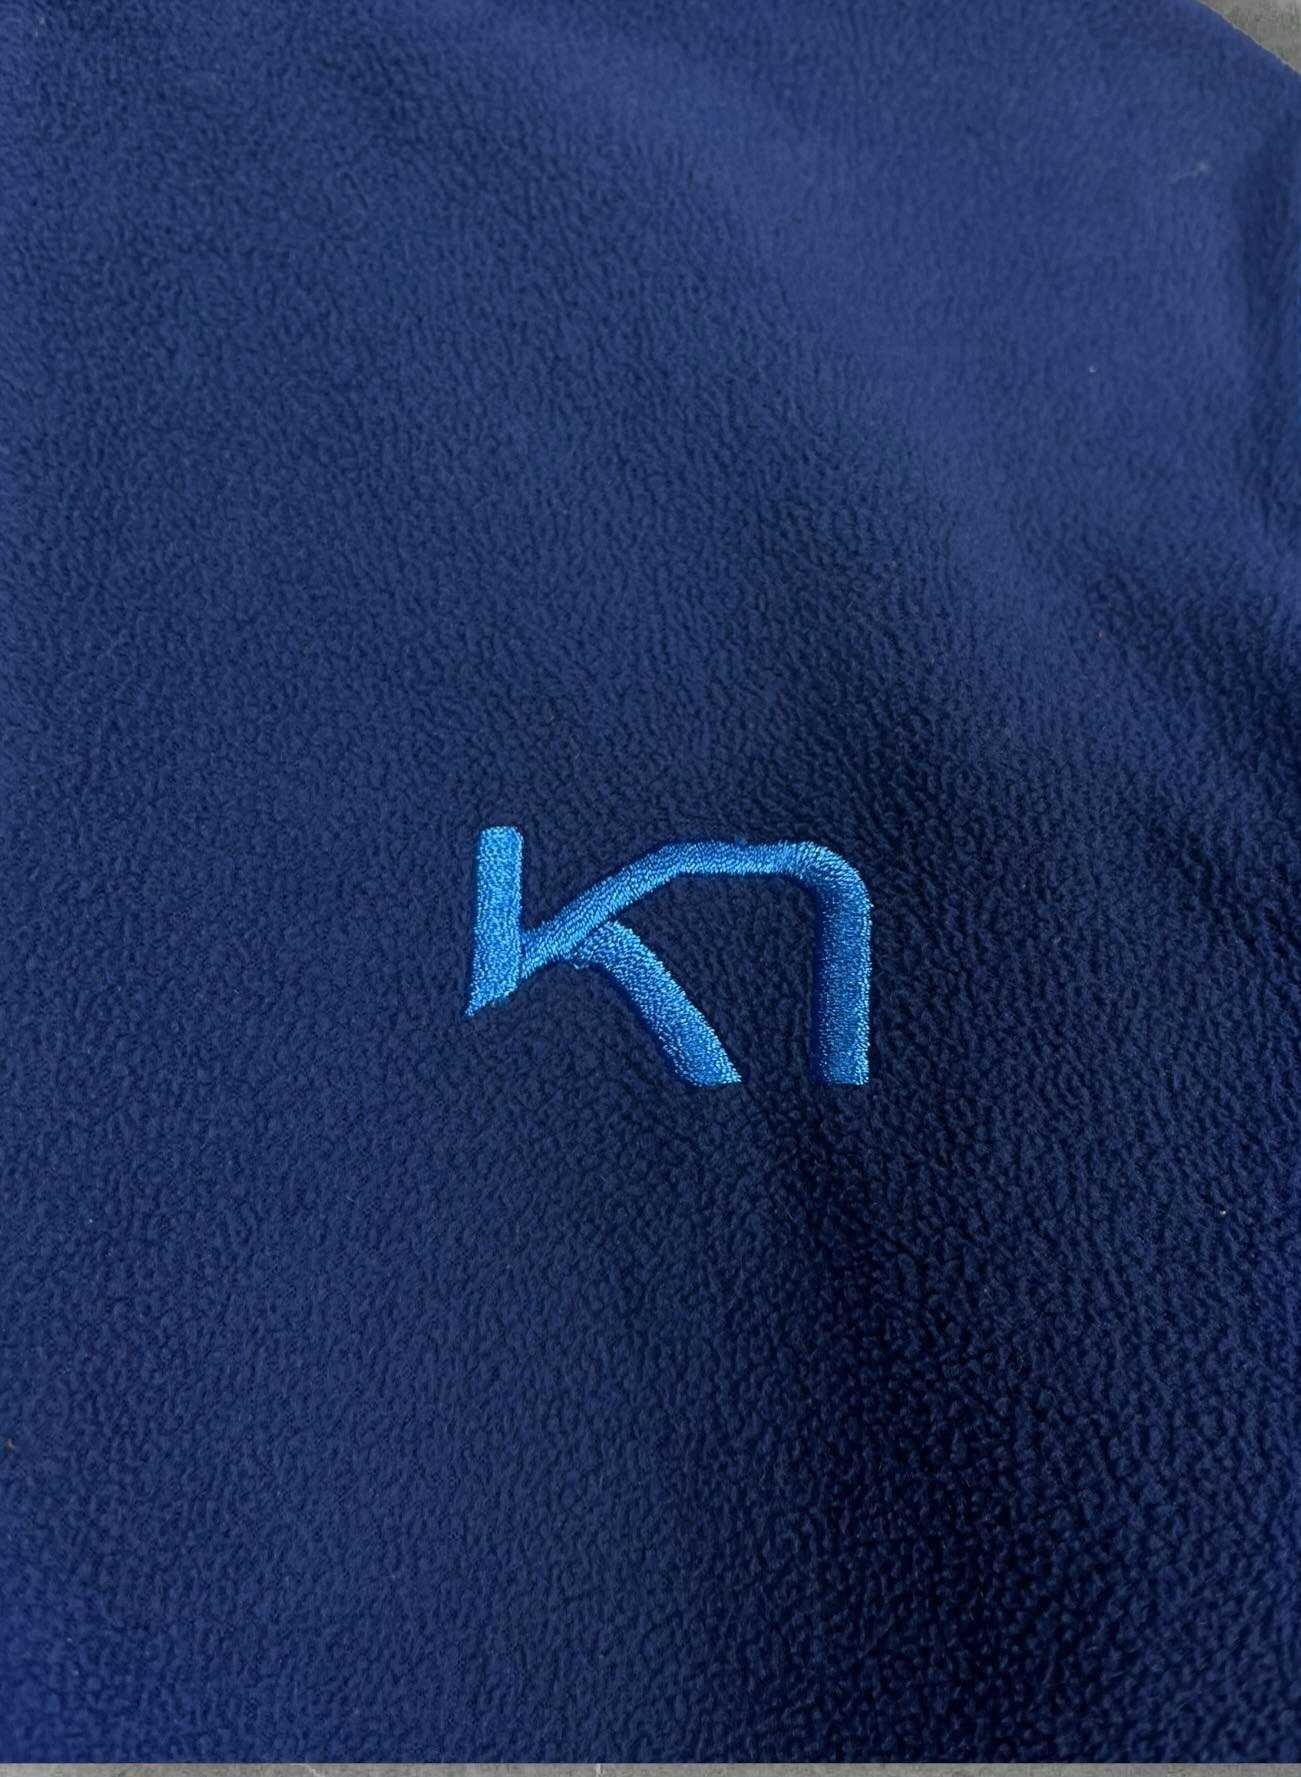 Bluza polarowa polar Kari Traa damski nowy model niebieski rozpinany